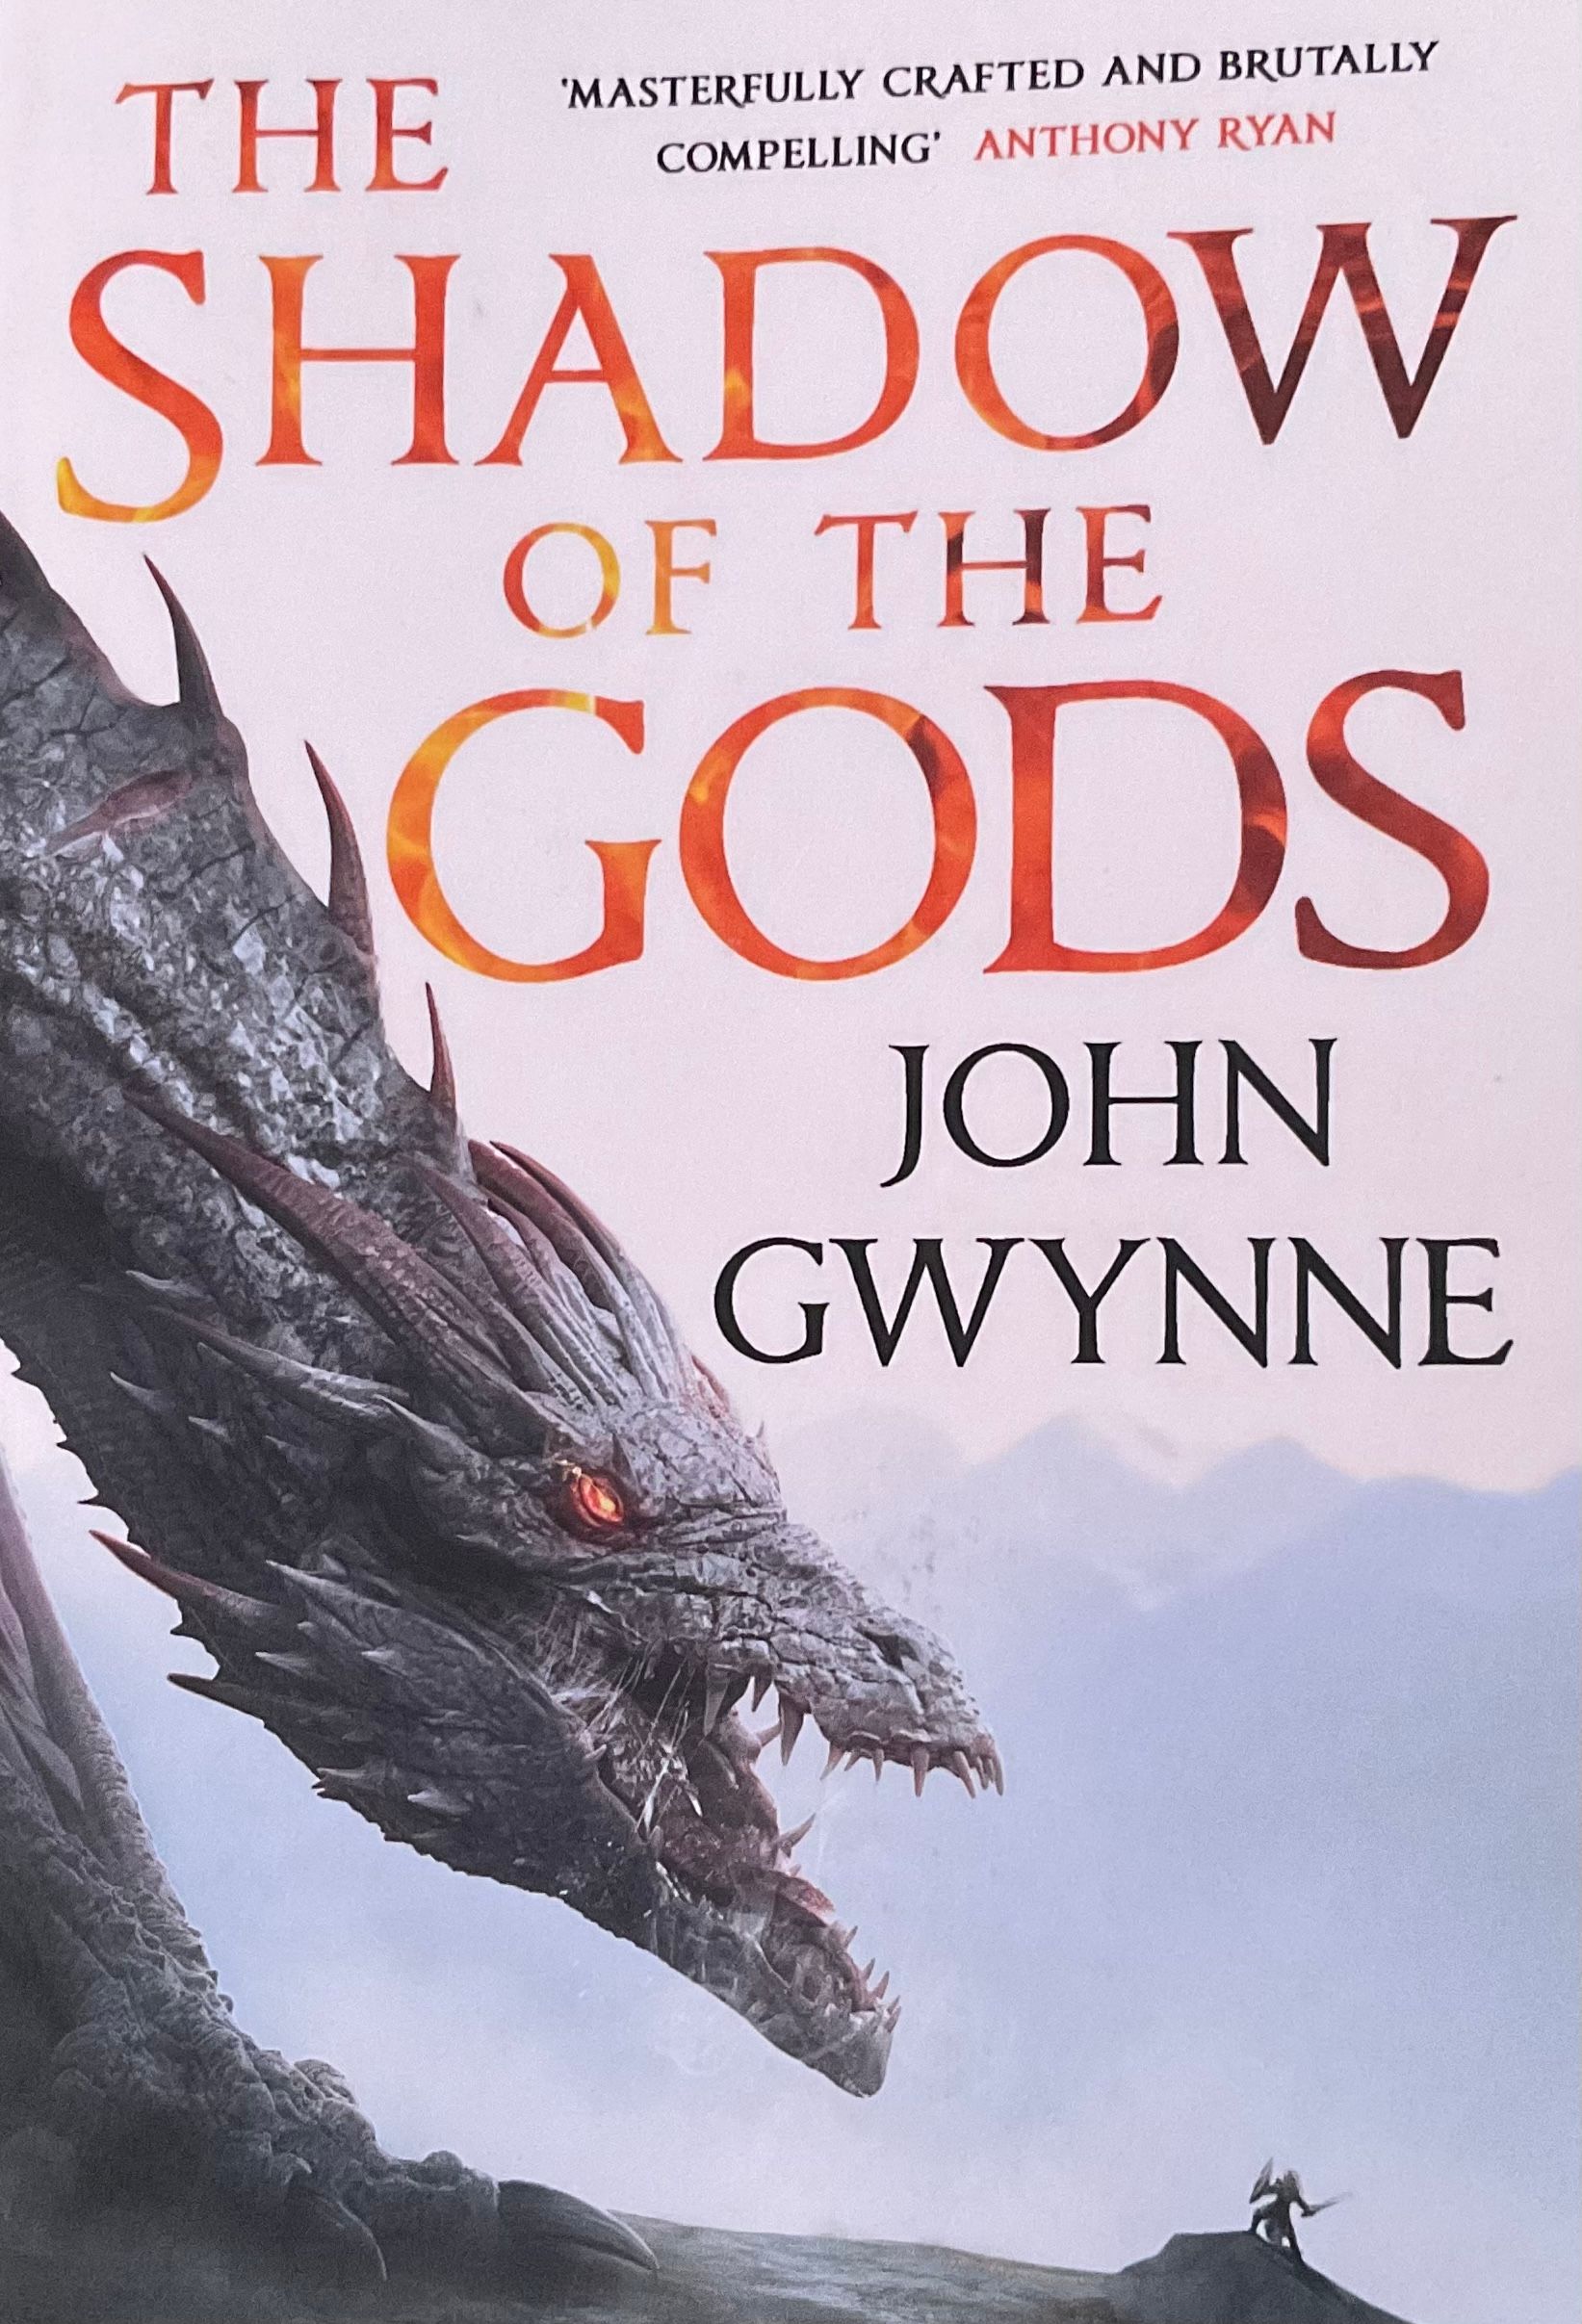 The Shadow of the Gods by John Gwynne